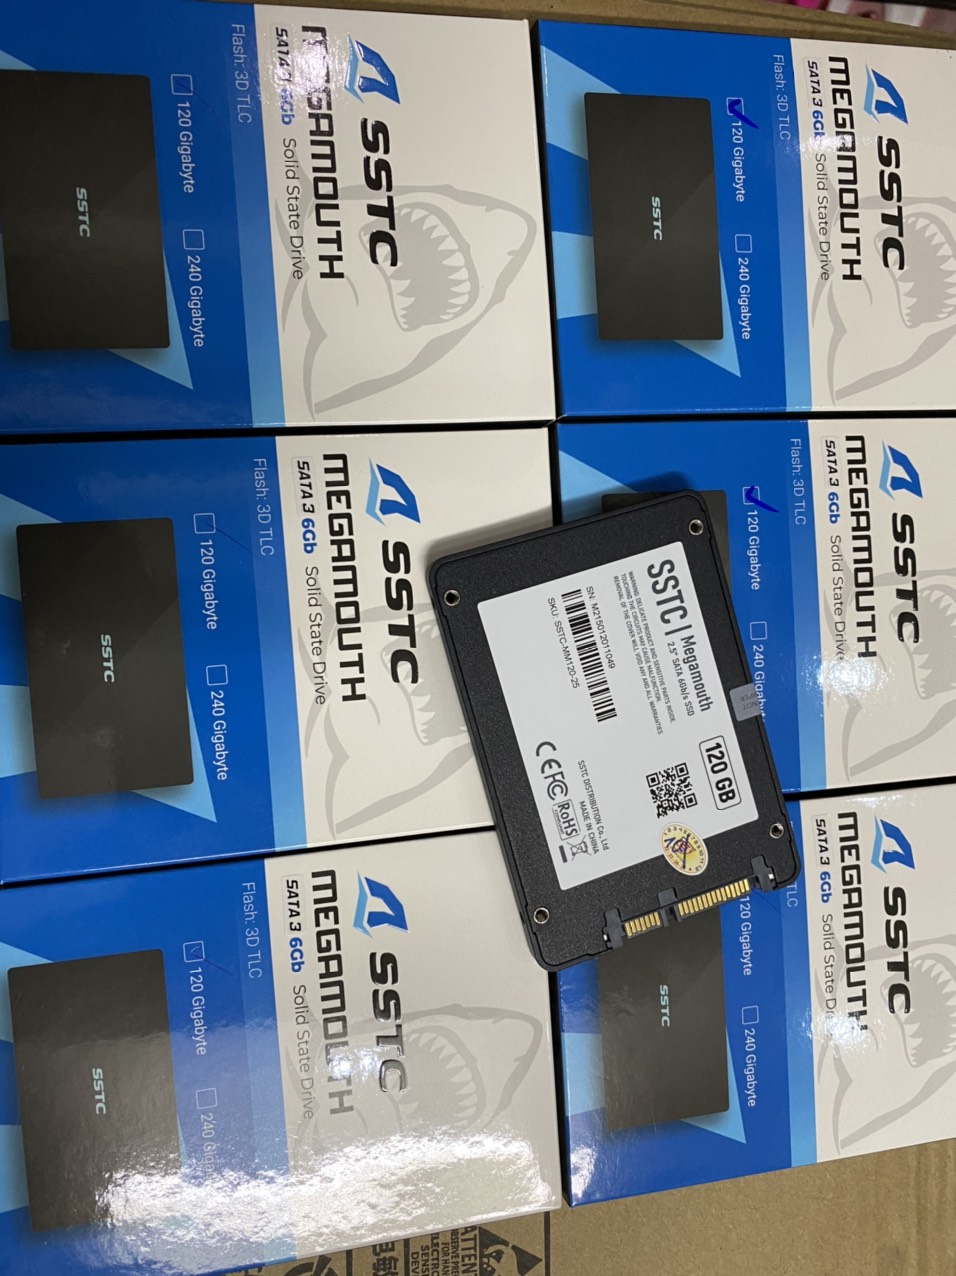 SSD SSTC 120GB - HÀNG CHÍNH HÃNG ( Tốc độ ghi: 520 MB/s - Tốc độ đọc: 490 MB/s)